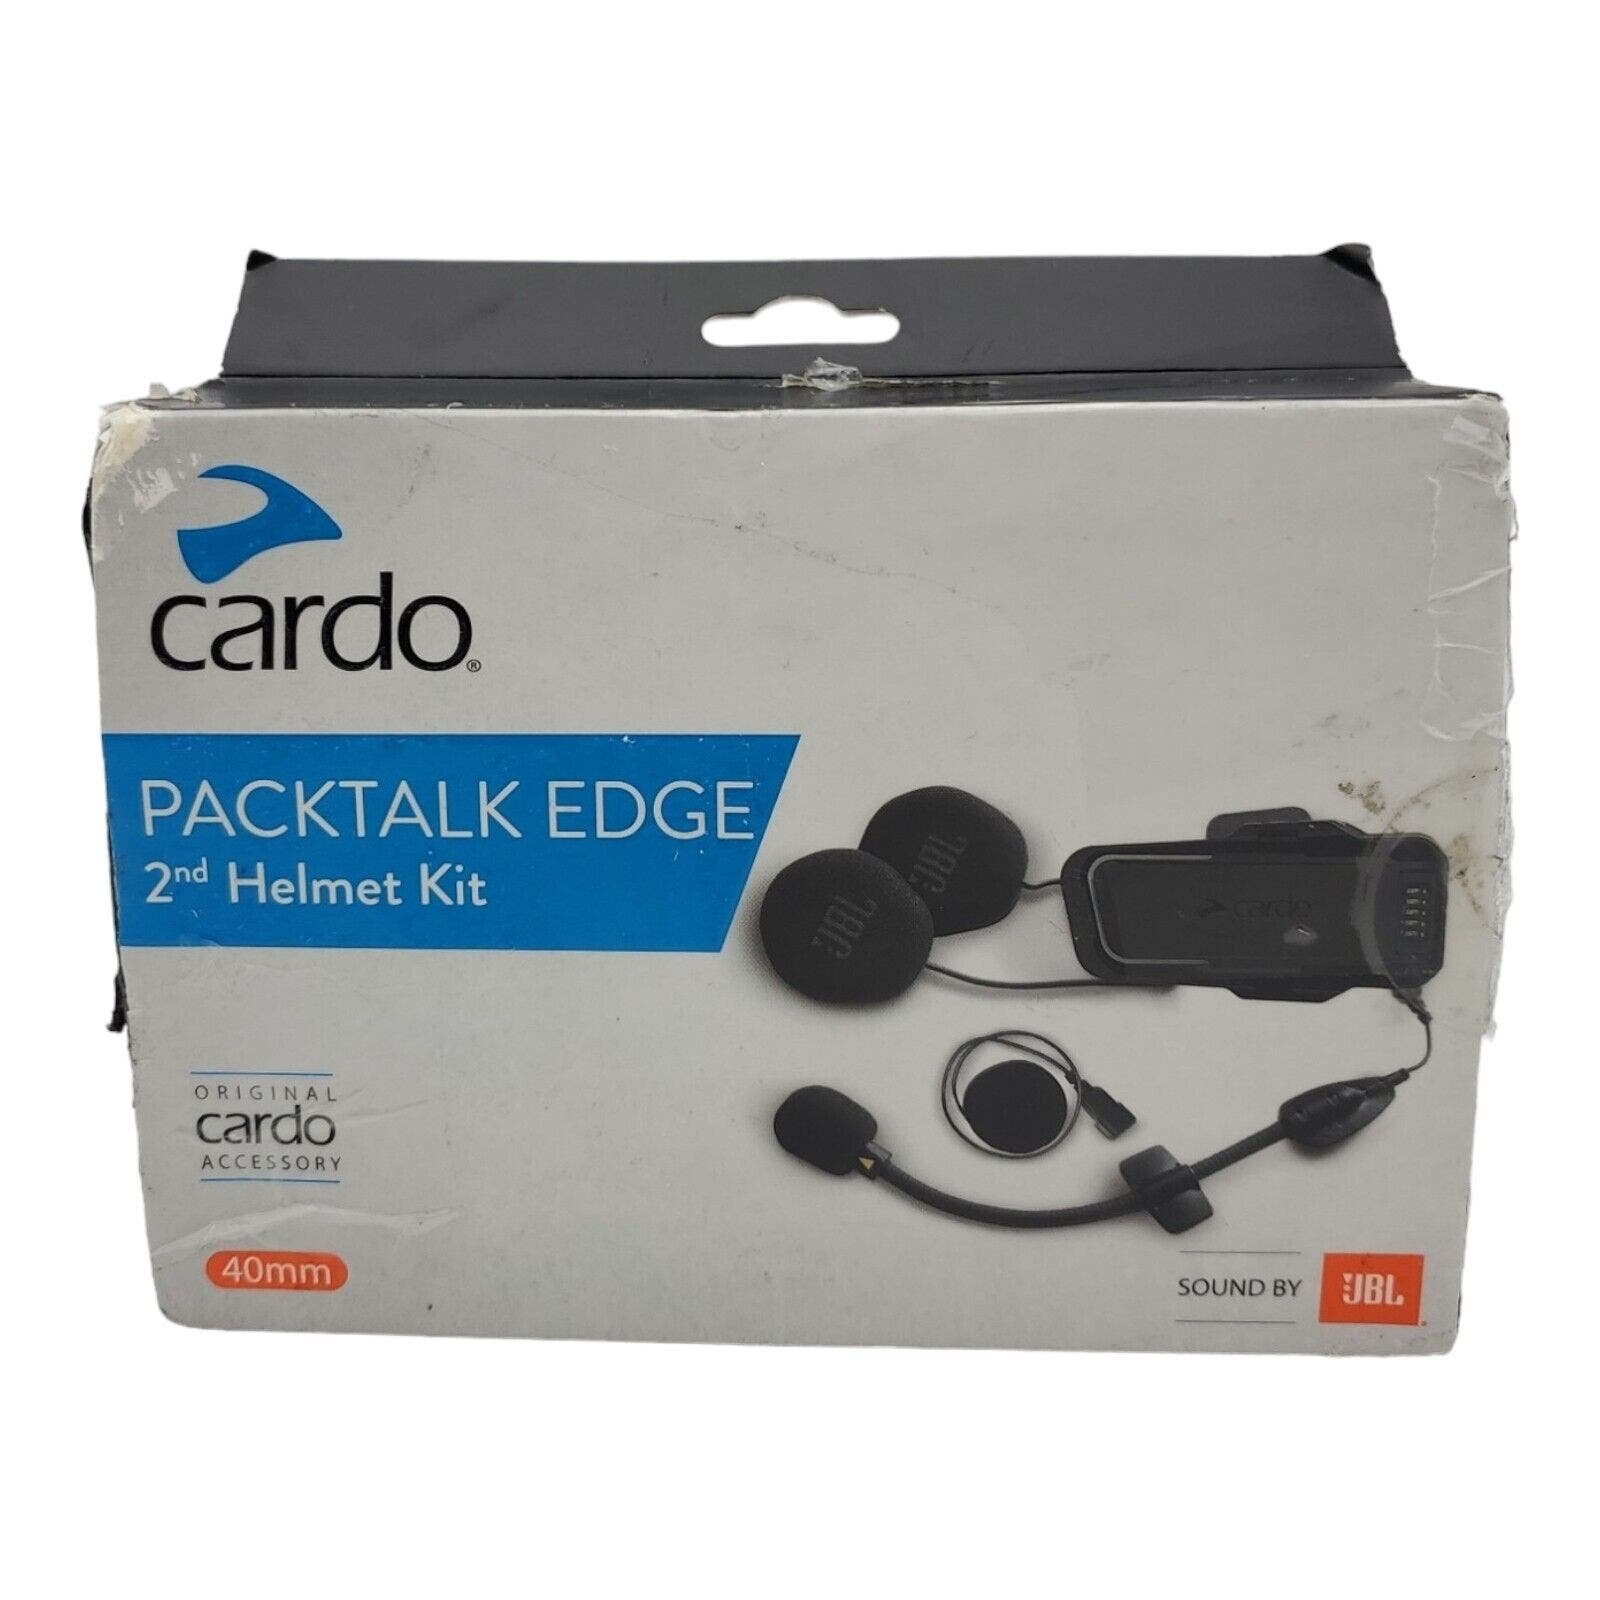 Cardo Packtalk Edge 2nd Motorcycle Helmet Audio Kit with JBL Speakers - Open Box PQPFxRDiy